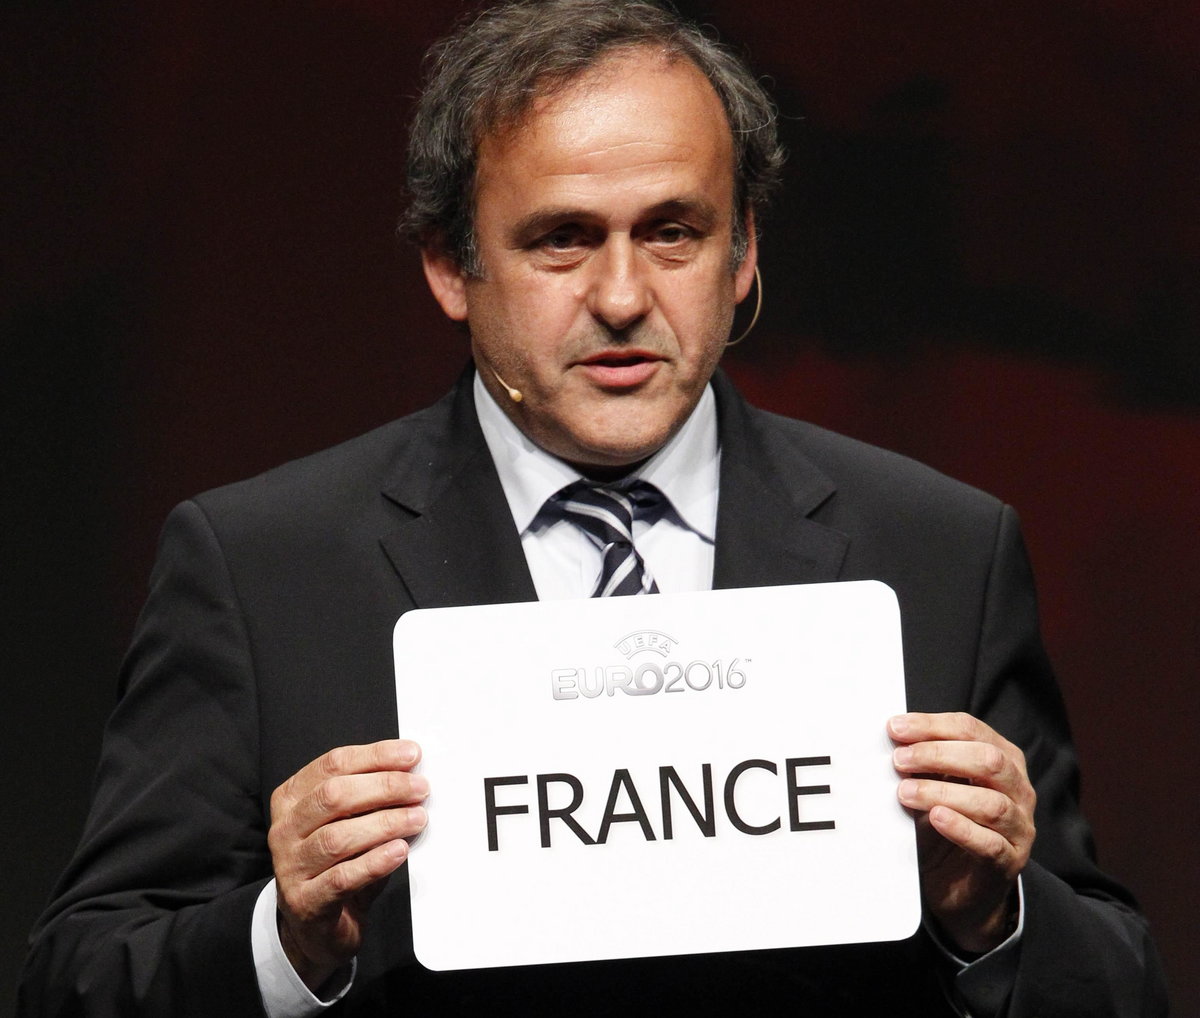 Michel Platini z kartką, która przedstawia państwo wybrane na gospodarza Euro 2016